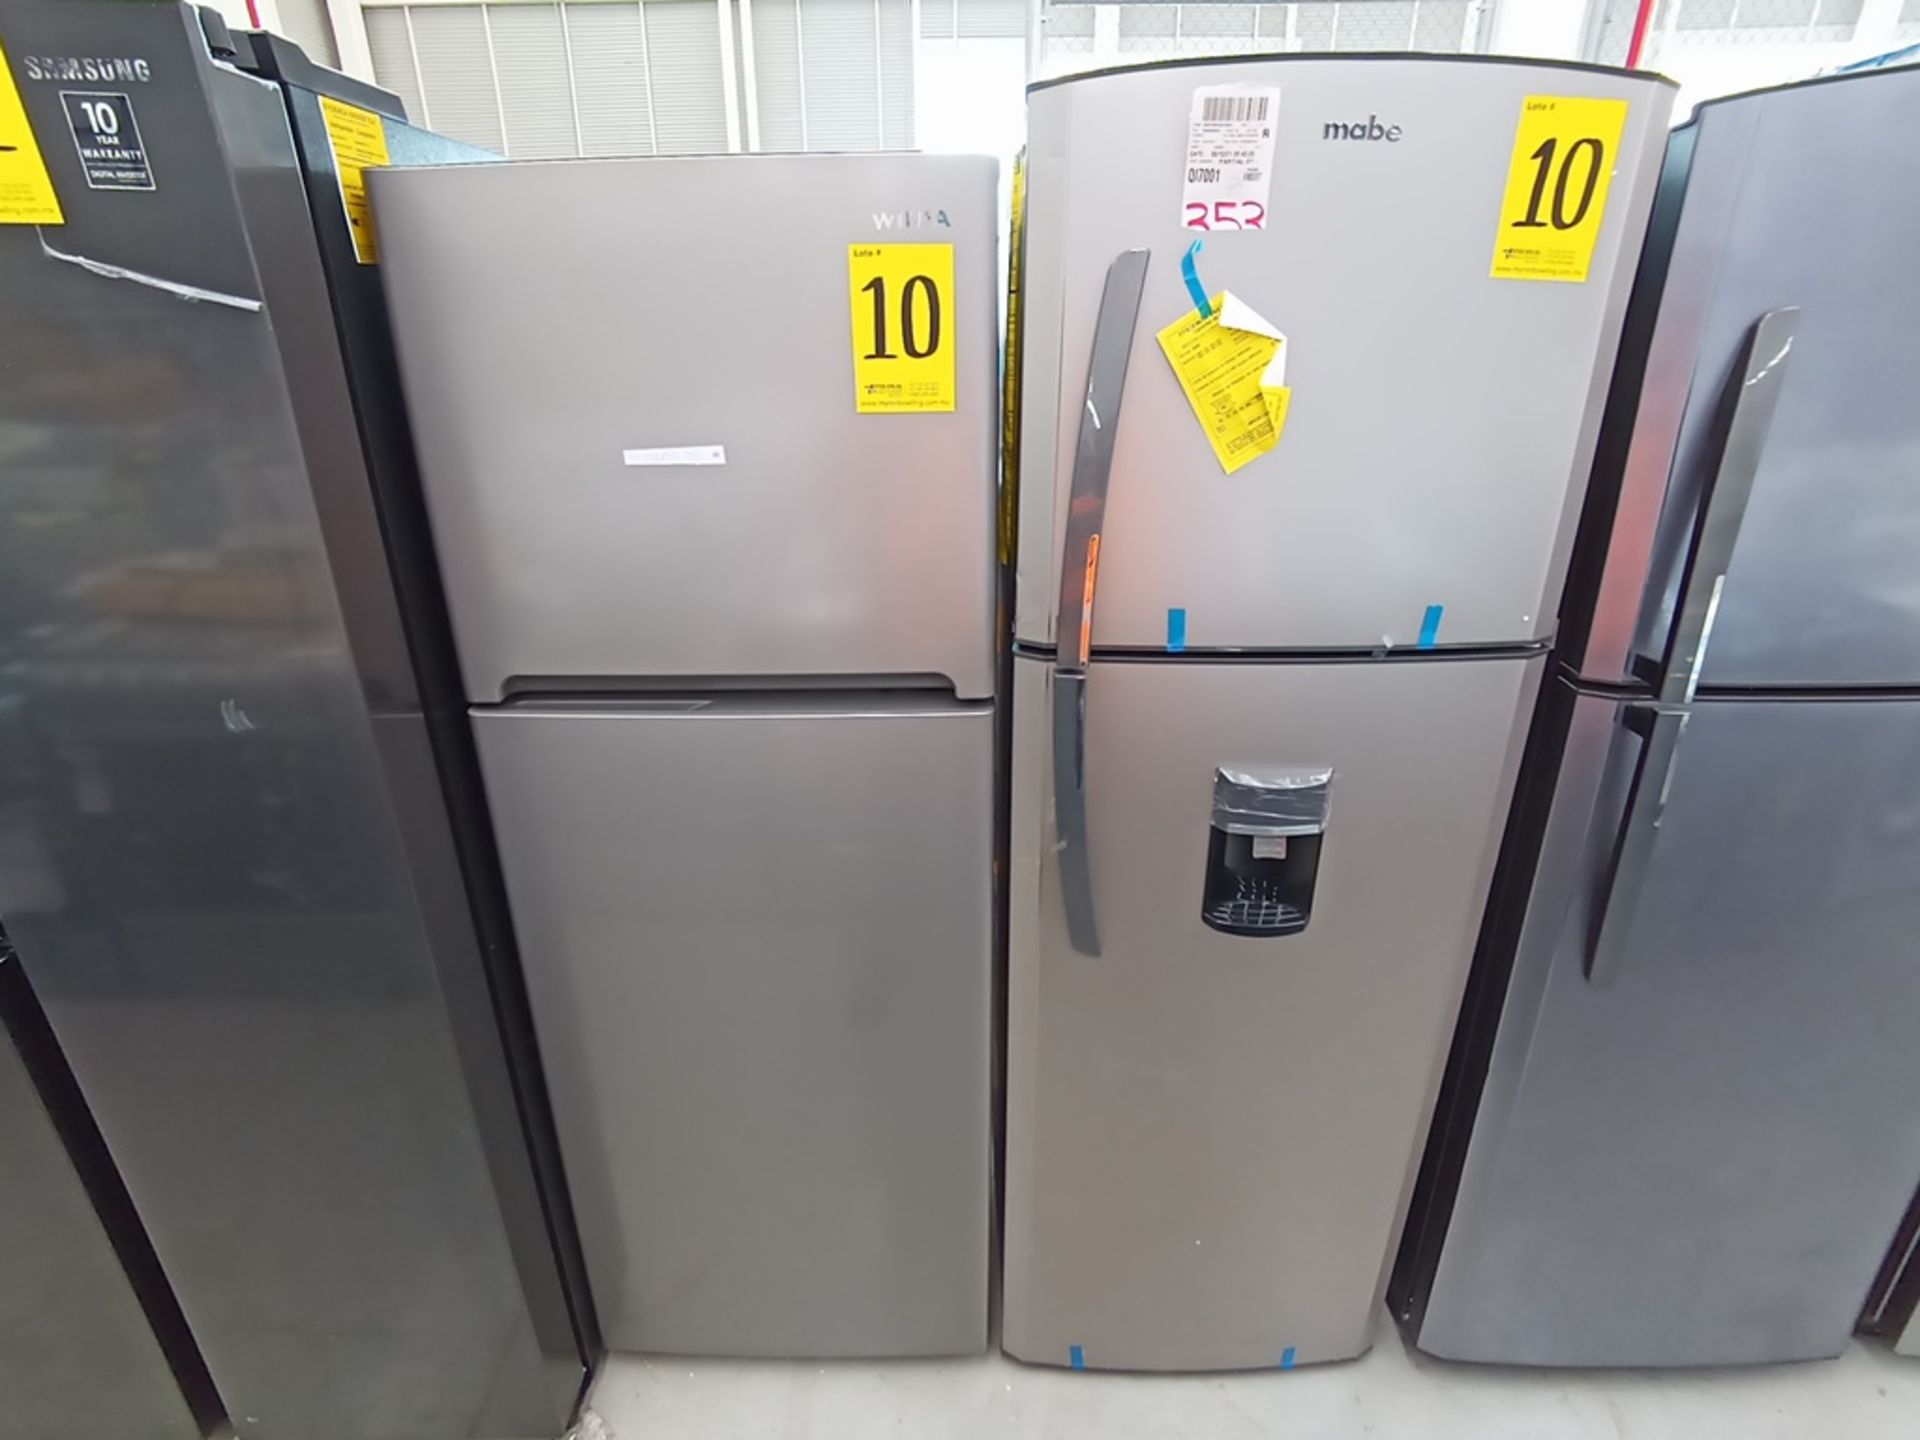 Lote de 2 refrigeradores contiene: 1 Refrigerador con dispensador de agua, Marca Mabe, Modelo RMA11 - Image 6 of 15